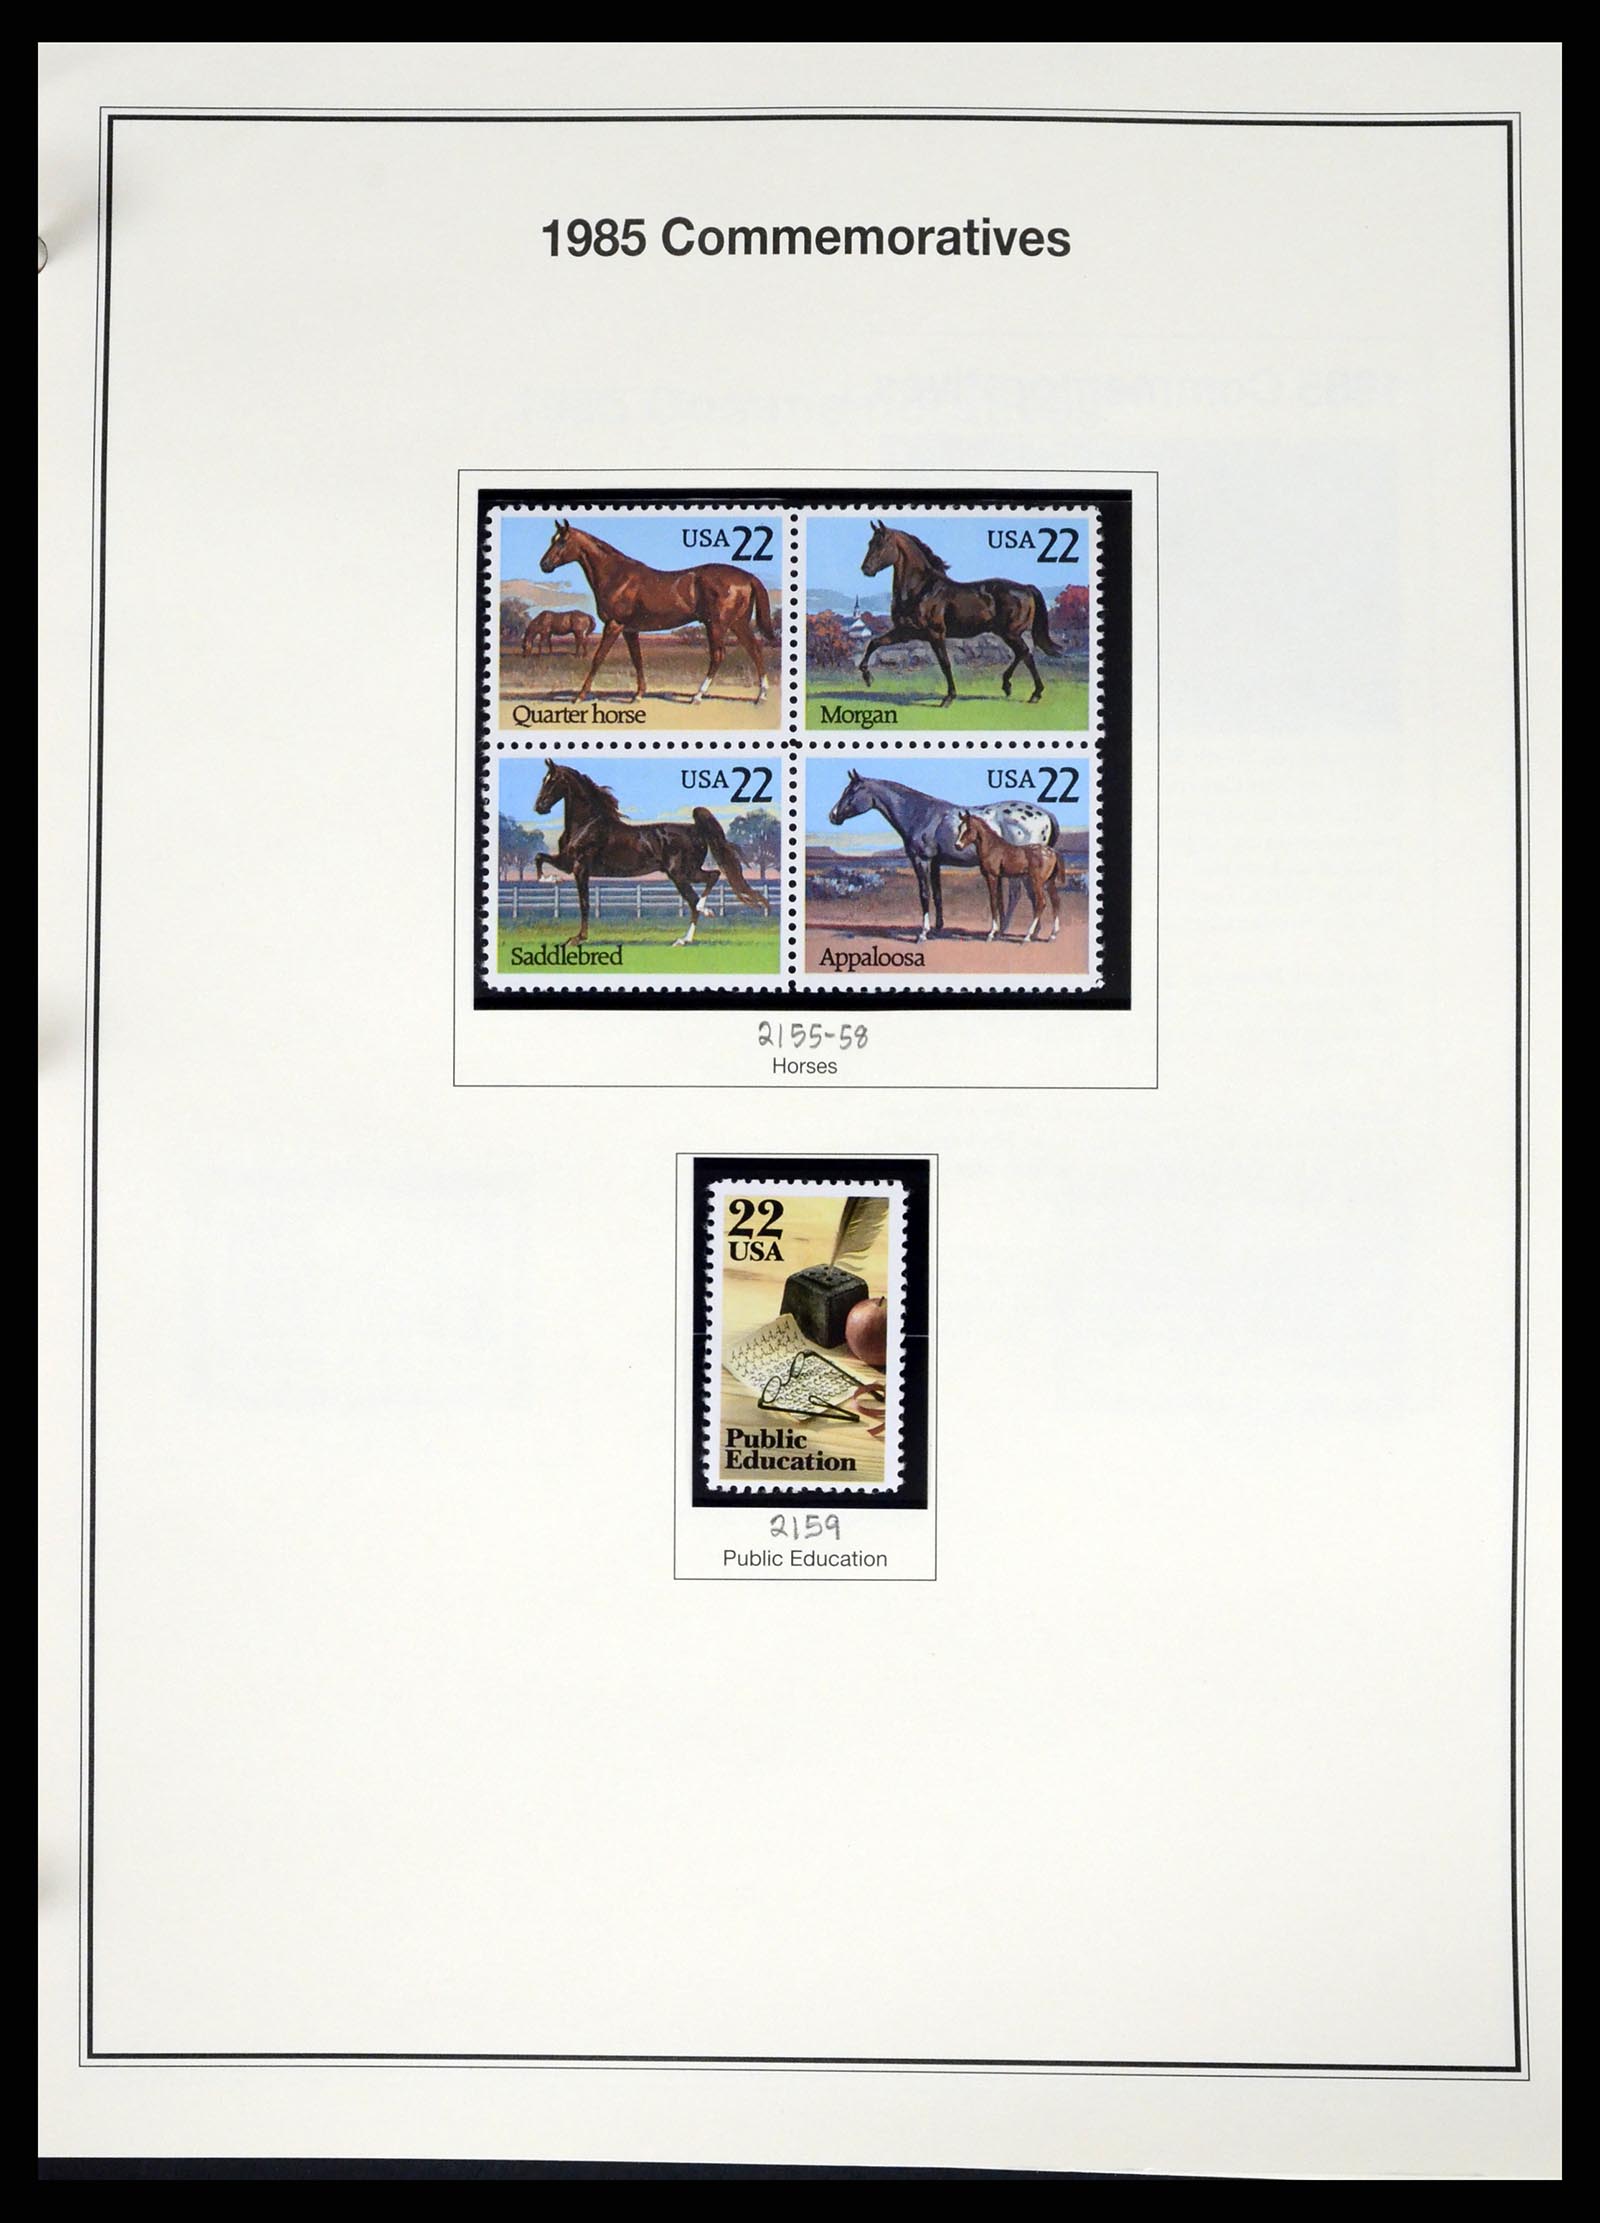 37193 088 - Stamp collection 37193 USA 1970-2020!